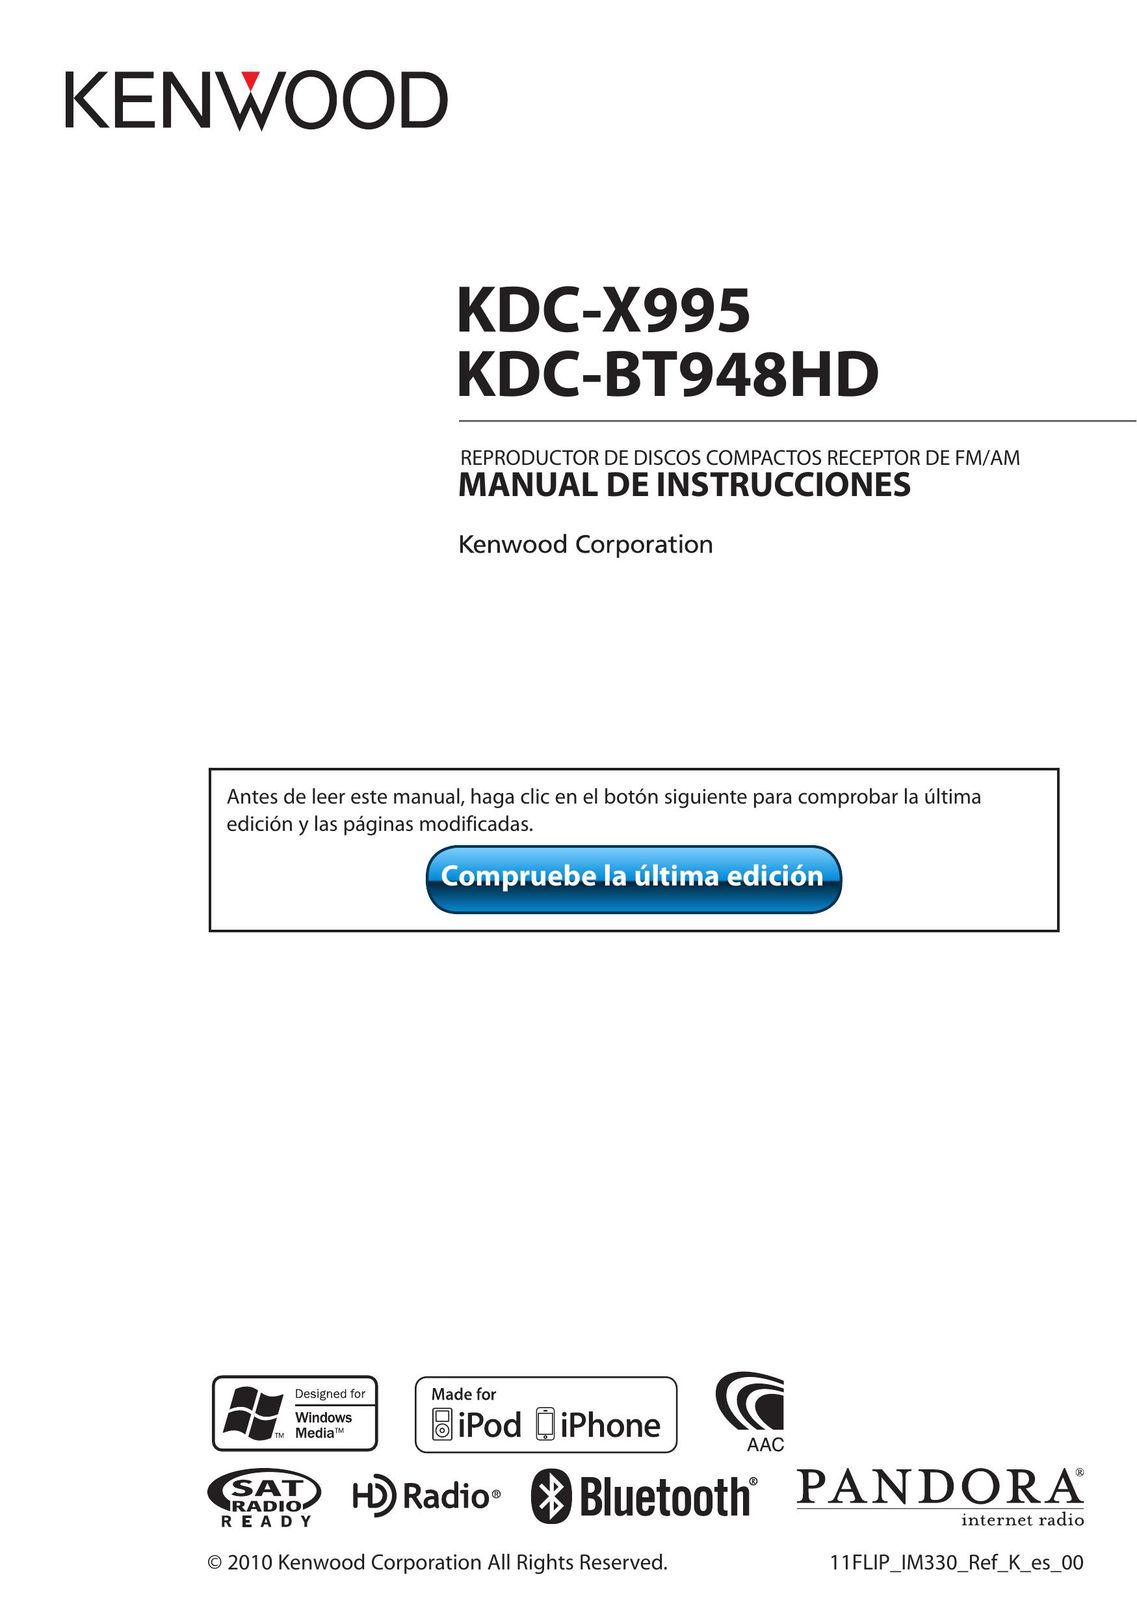 Kenwood KDC-X995 MP3 Docking Station User Manual